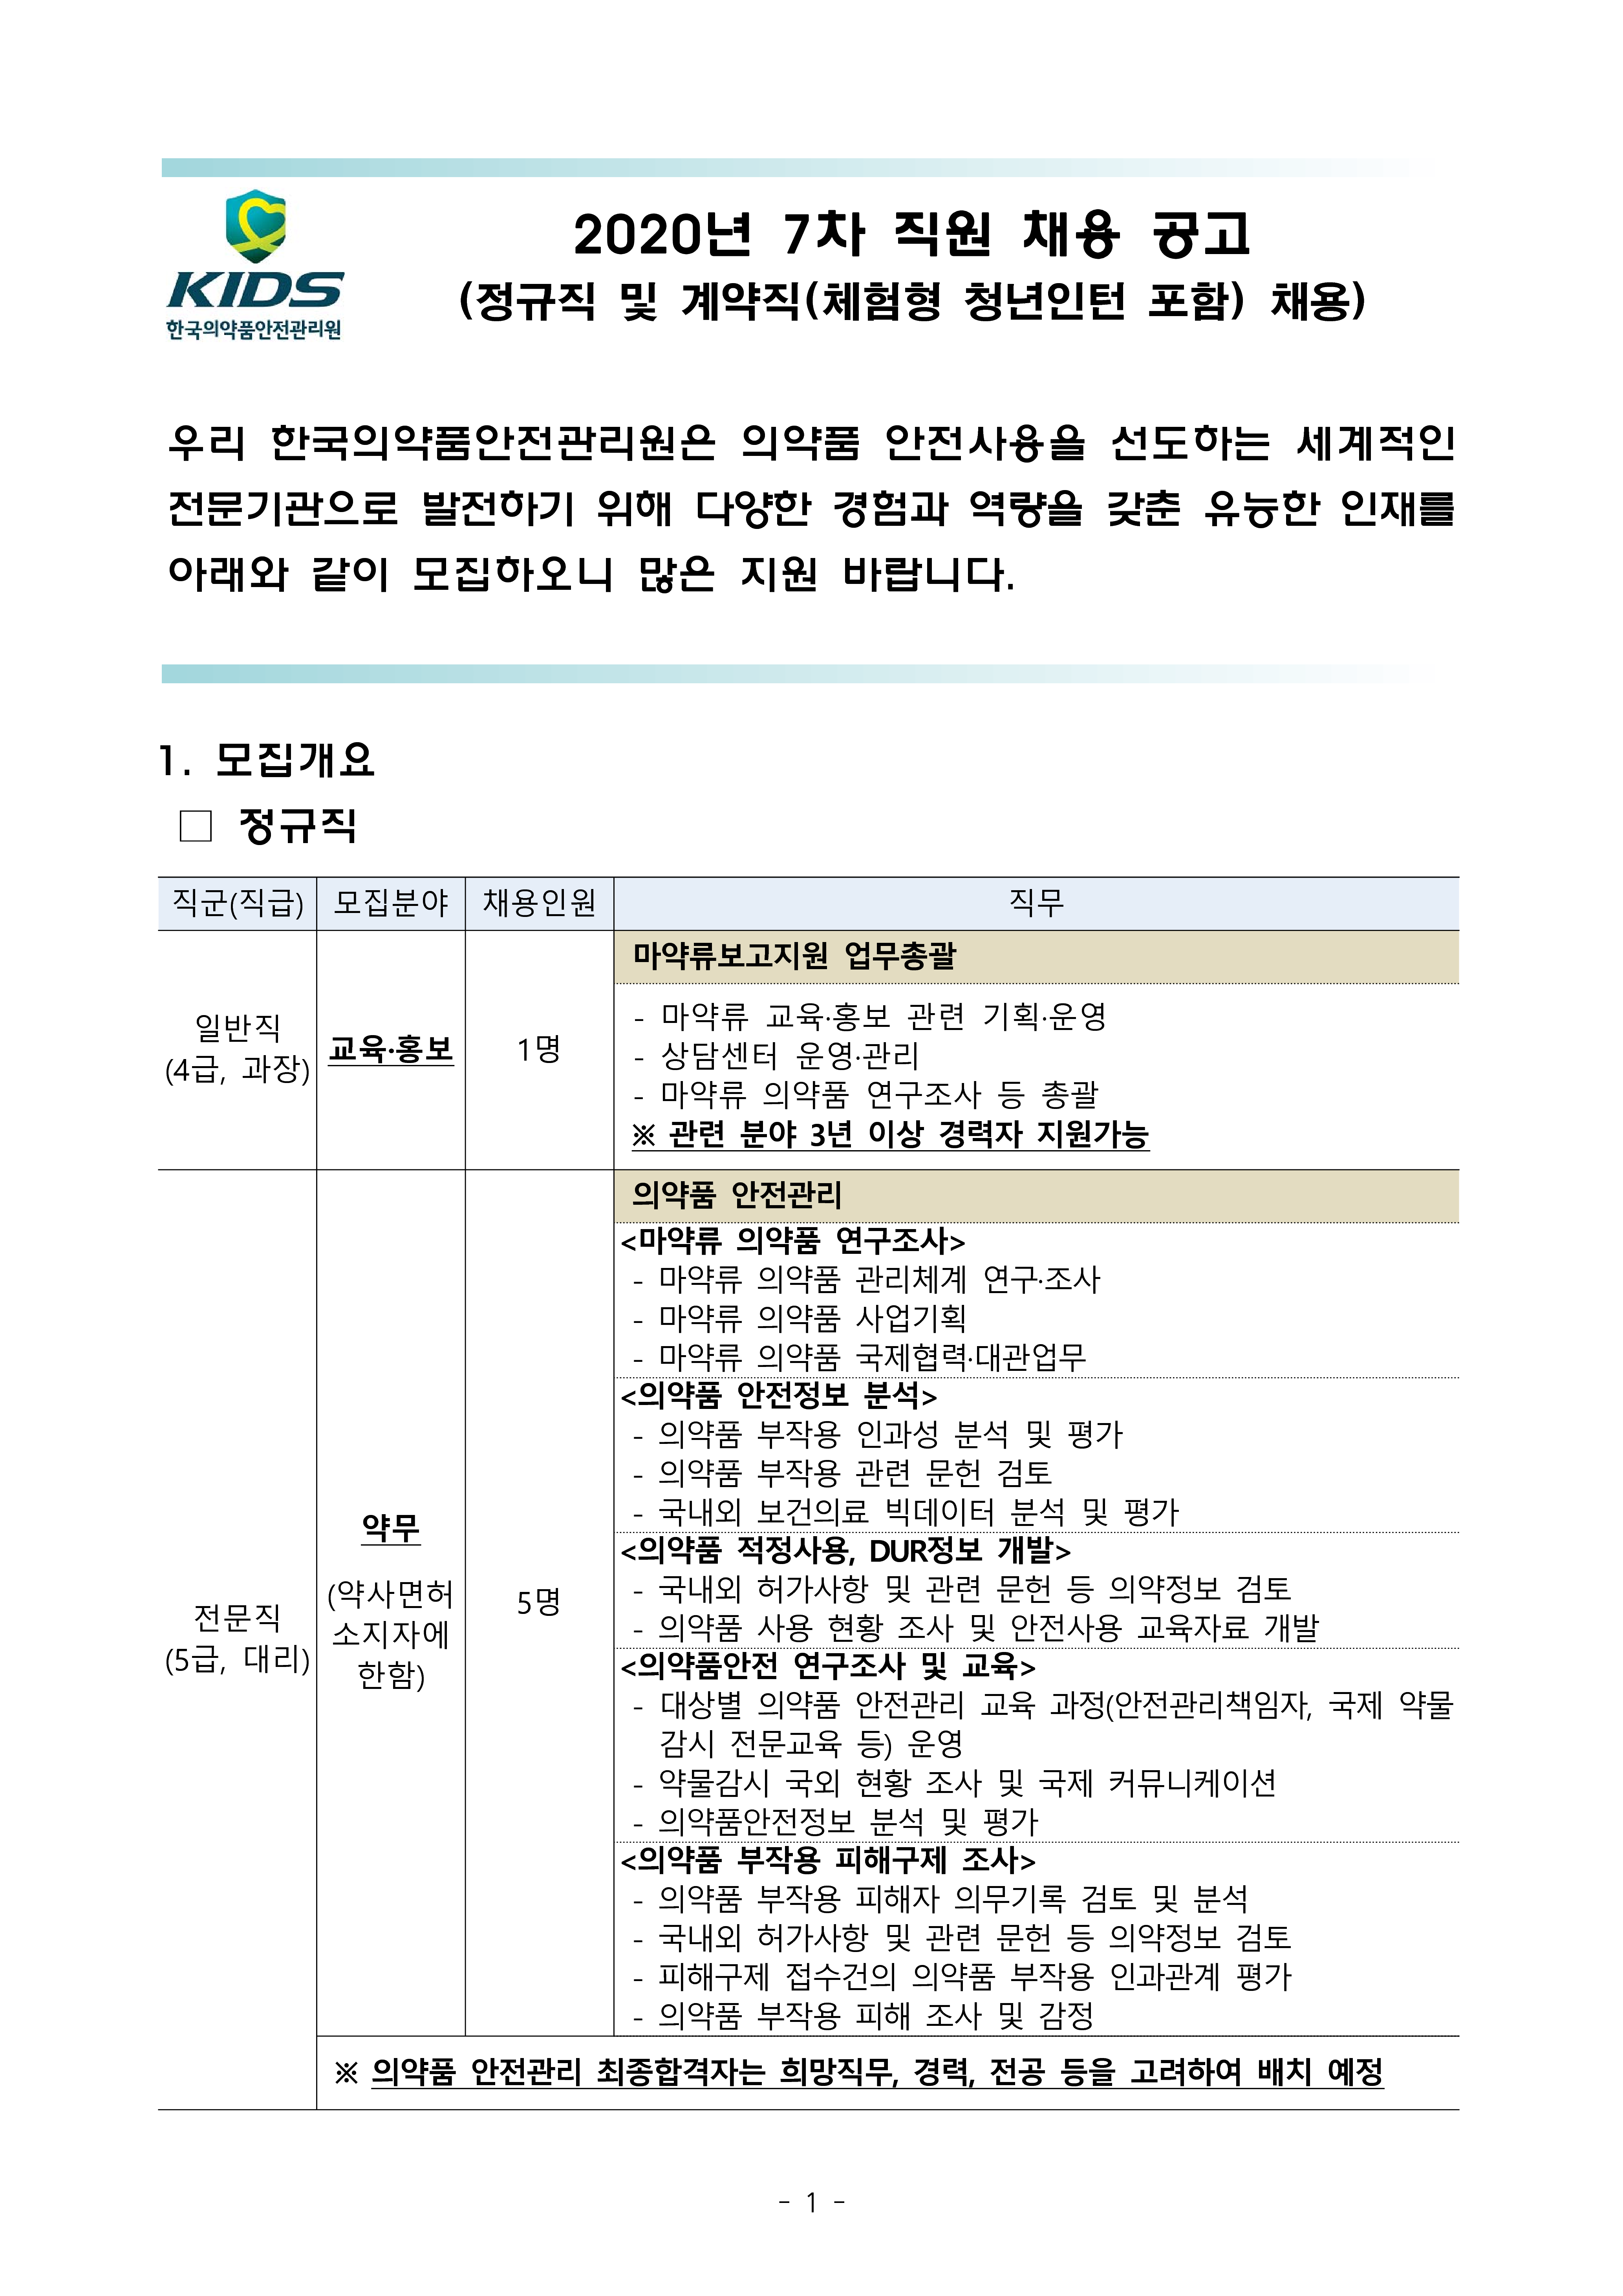 한국의약품안전관리원_2020년 7차 채용 공고문(게시)_1.png